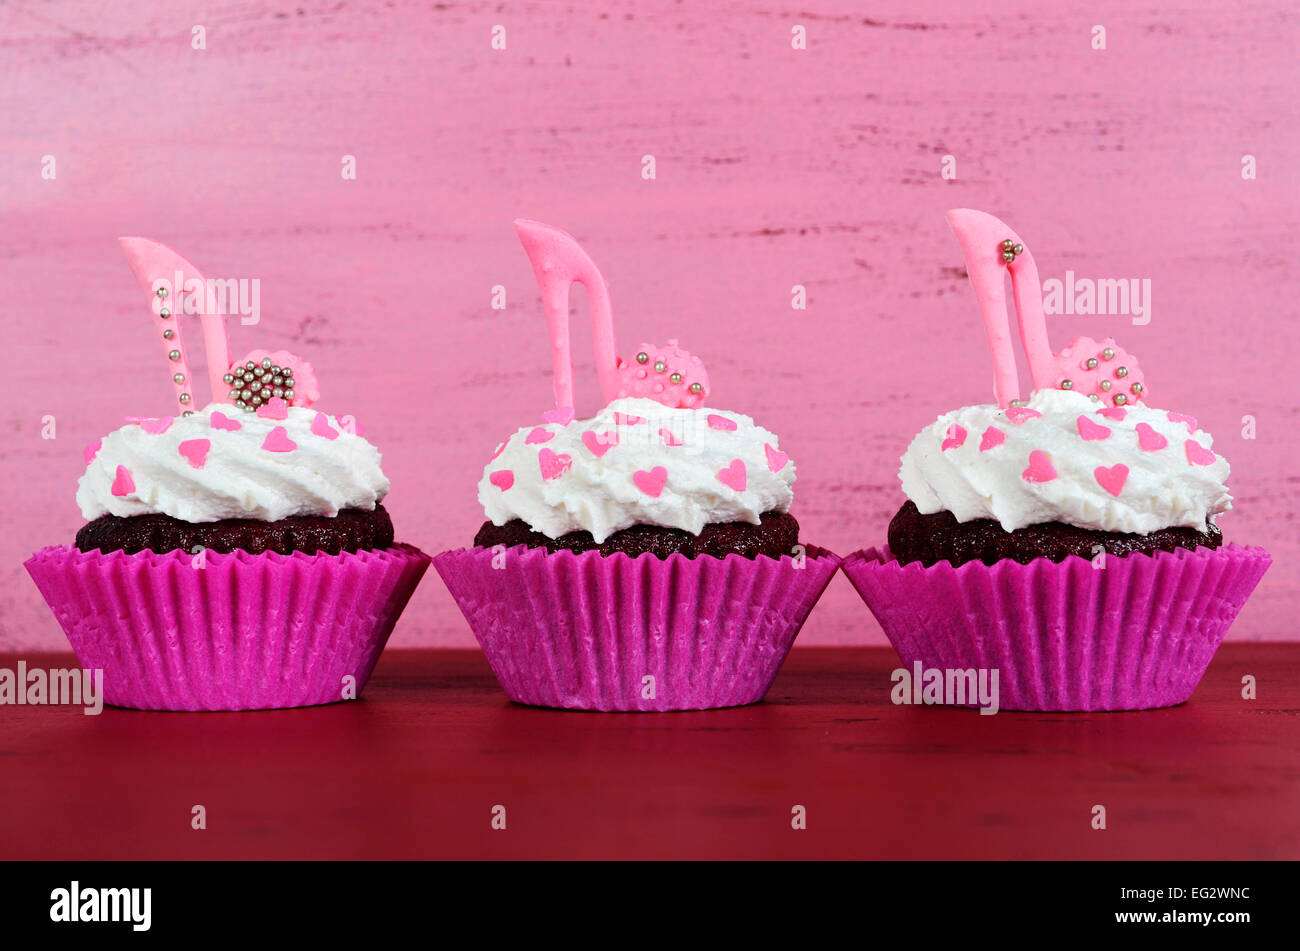 La Journée internationale des femmes, le 8 mars, cupcakes avec talon haut stiletto chaussures fondant sur fond de bois rose vintage. Banque D'Images